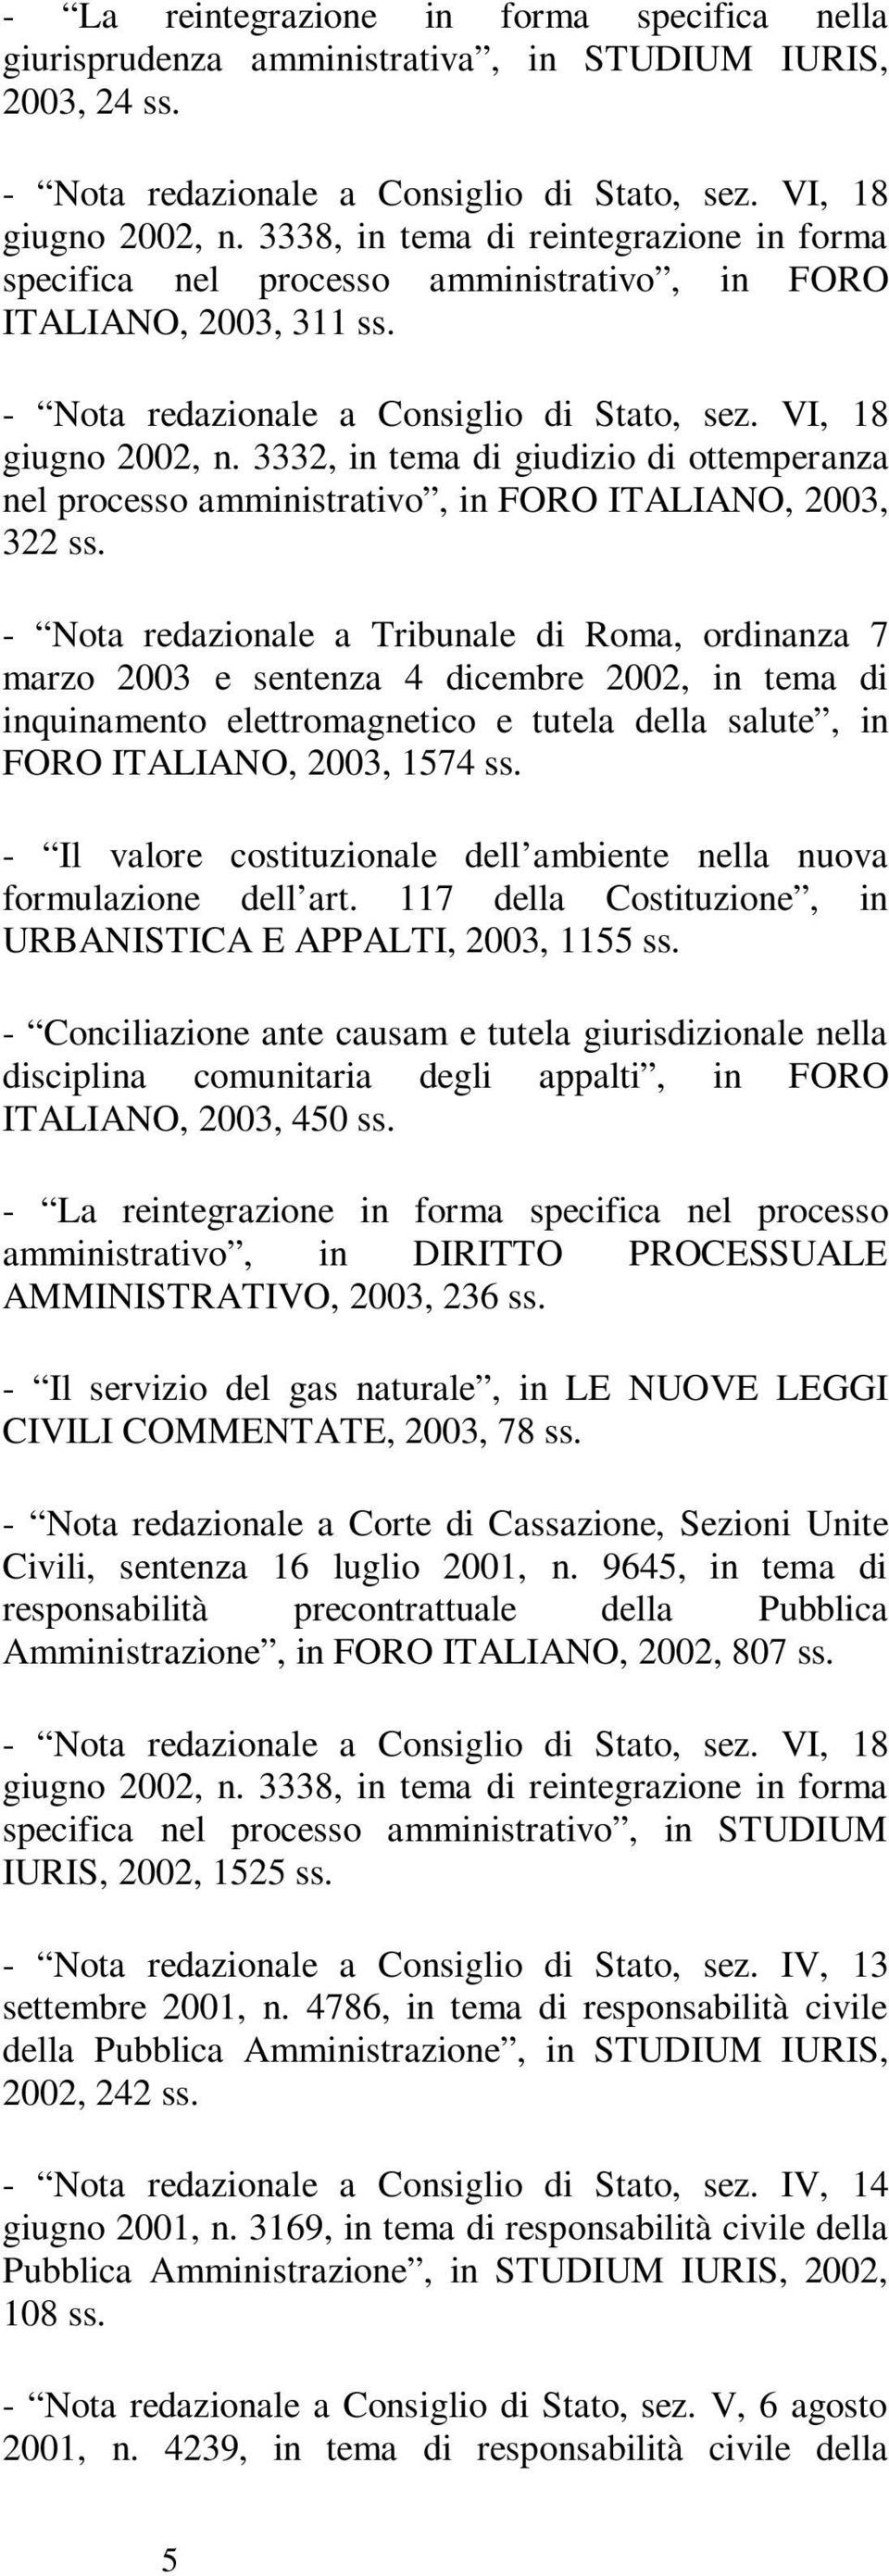 3332, in tema di giudizio di ottemperanza nel processo amministrativo, in FORO ITALIANO, 2003, 322 - Nota redazionale a Tribunale di Roma, ordinanza 7 marzo 2003 e sentenza 4 dicembre 2002, in tema